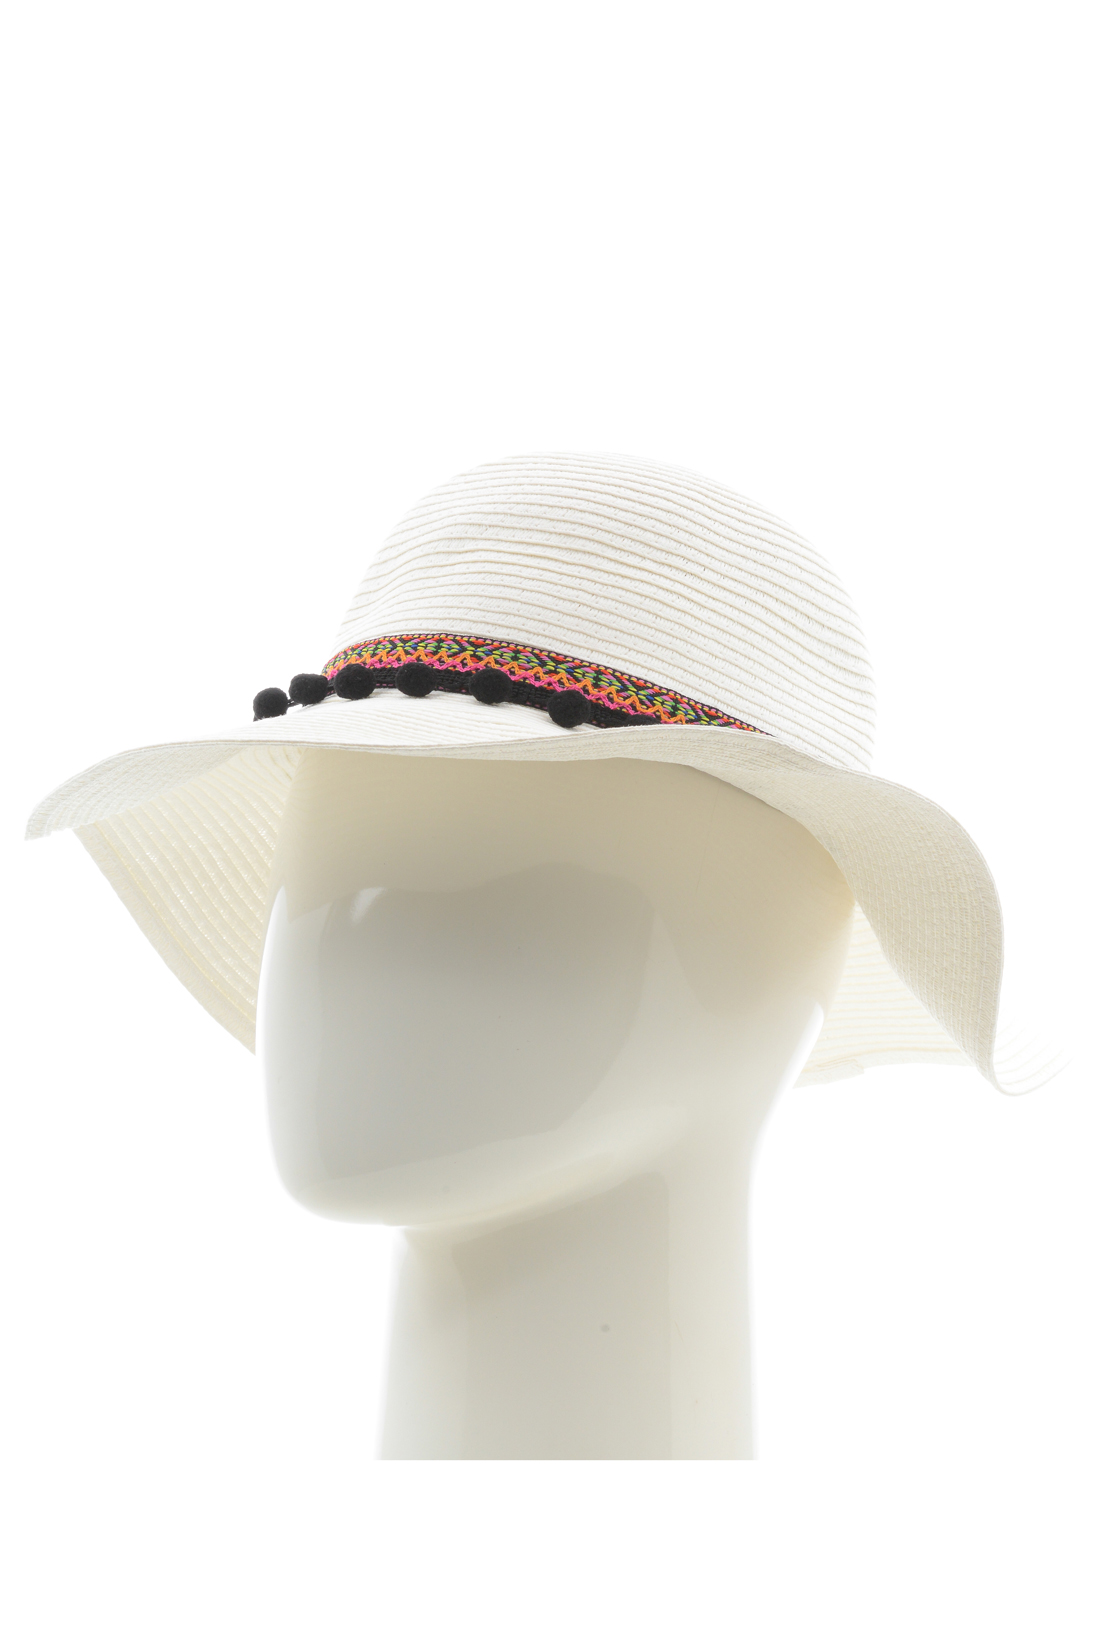 Шляпа с каймой (арт. baon B348001), размер Б/р 56, цвет белый Шляпа с каймой (арт. baon B348001) - фото 1